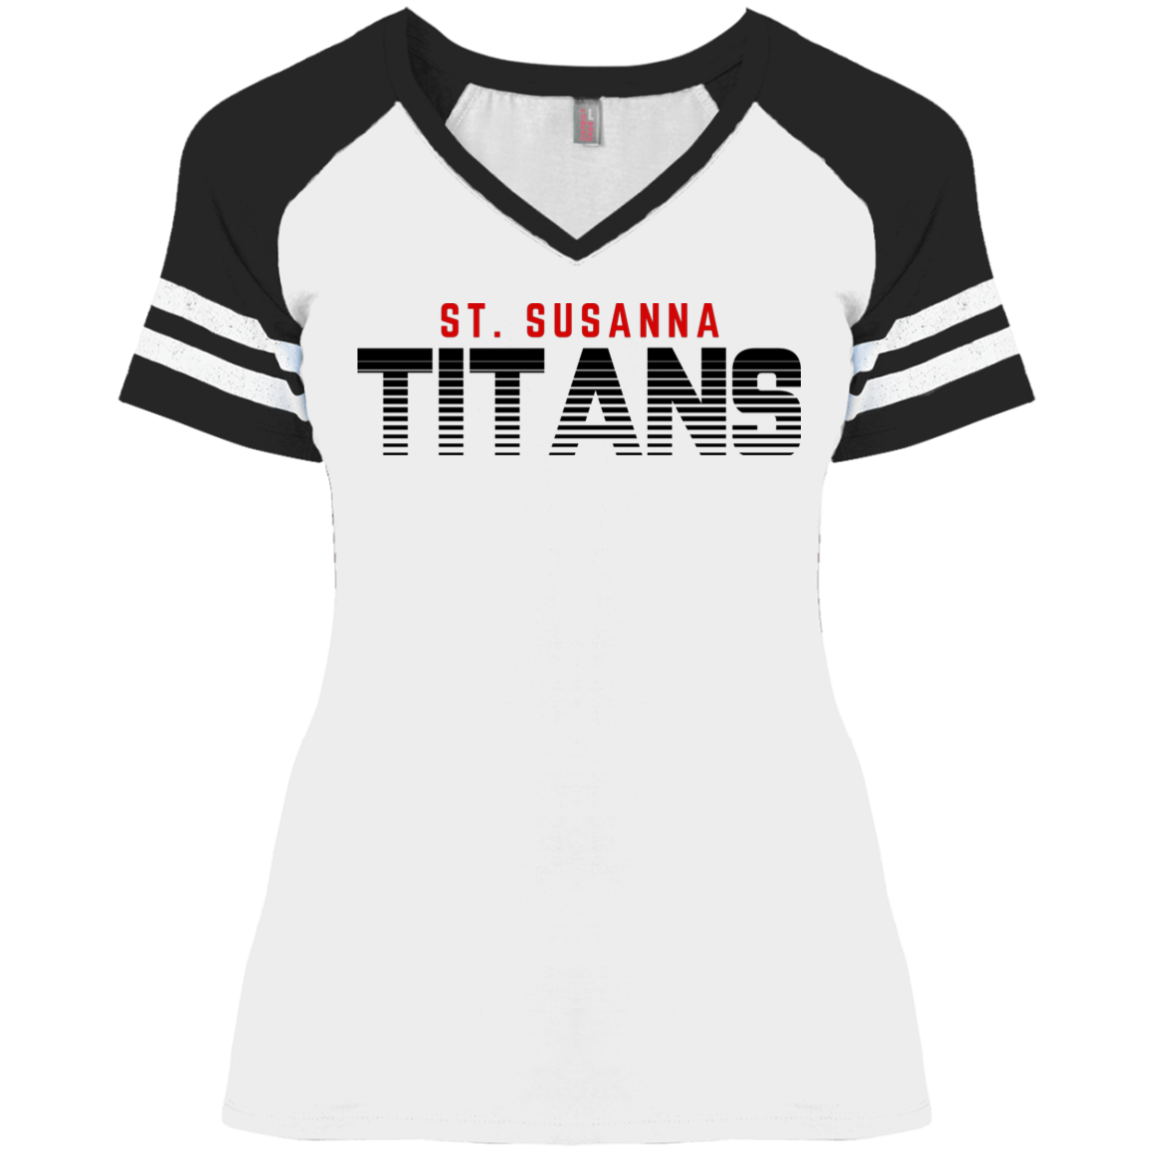 St. Susanna Titans Fade (White) Ladies' Game V-Neck T-Shirt